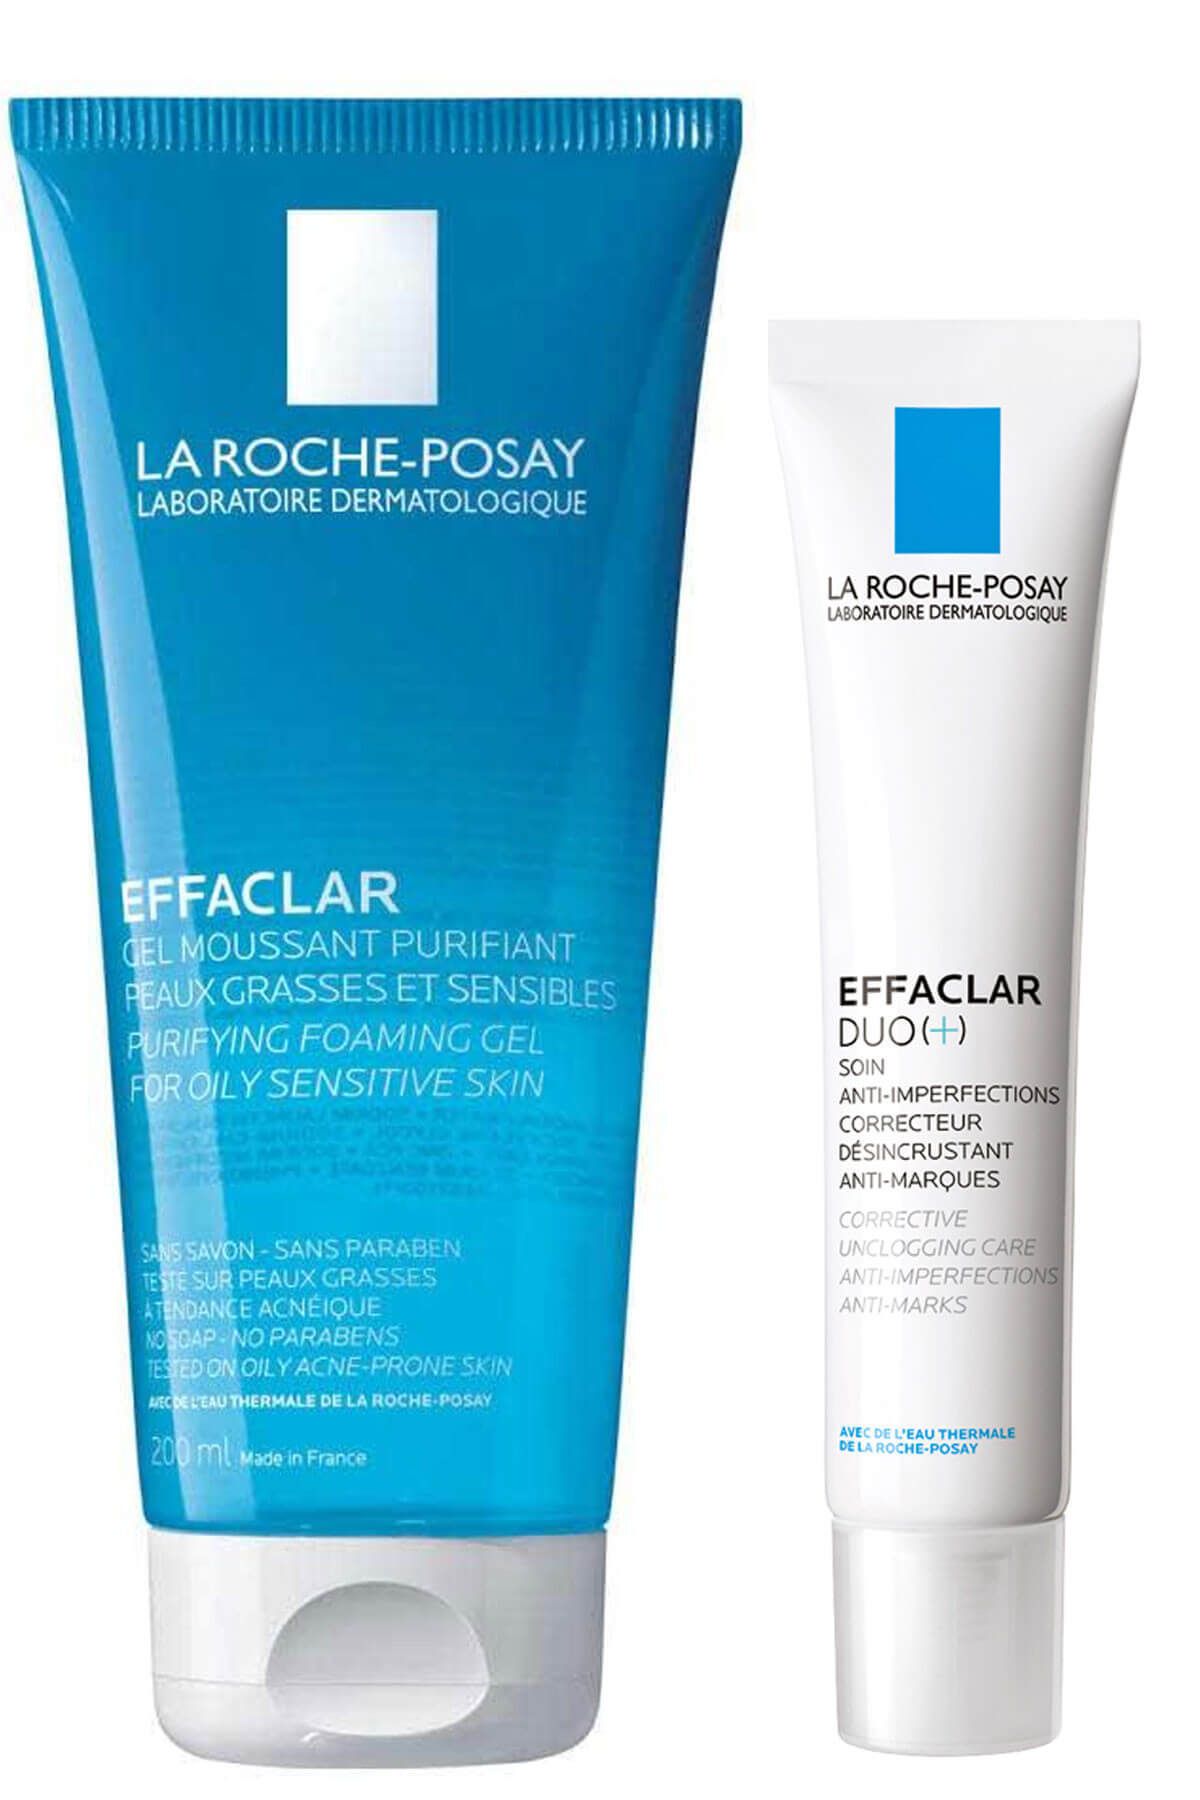 La Roche Posay Effaclar Gel Akne Eğilimli Yağlı Ciltler Için Sabun Içermeyen Temizleyici Jel 200ml +